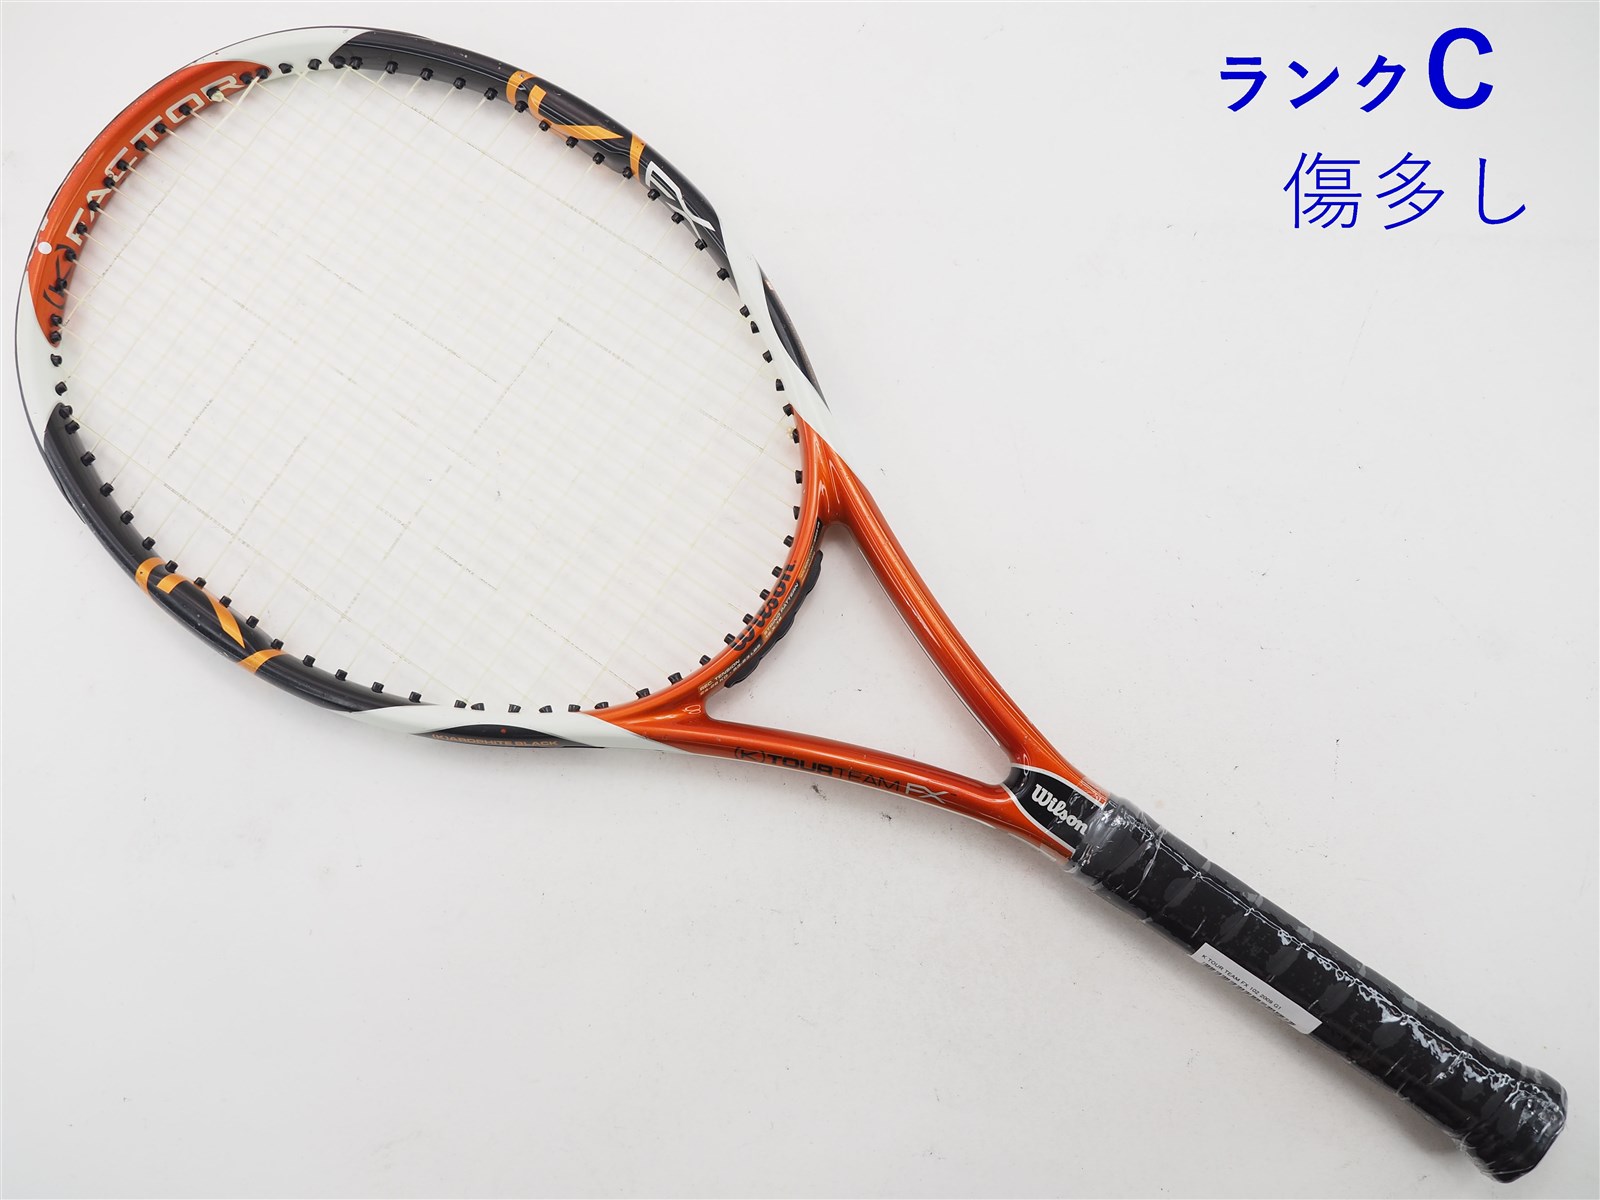 22-24-23mm重量テニスラケット ウィルソン K ストライク 105 2009年モデル (G2)WILSON K STRIKE 105 2009